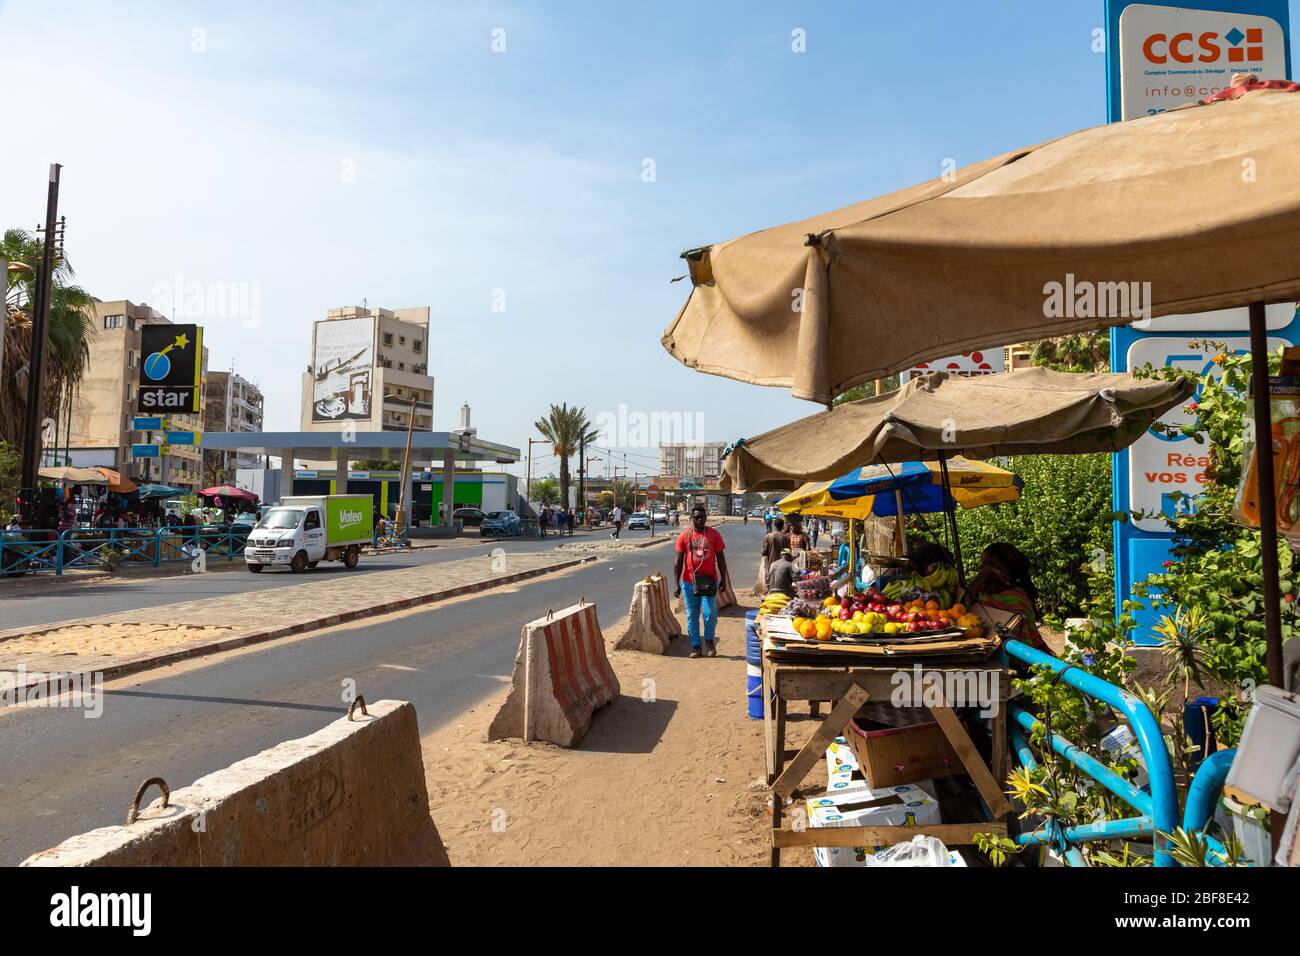 DAKAR, SÉNÉGAL - 11 NOVEMBRE 2019 : personnes travaillant et en trafic à Dakar, capitale du Sénégal, Afrique de l'Ouest. Banque D'Images